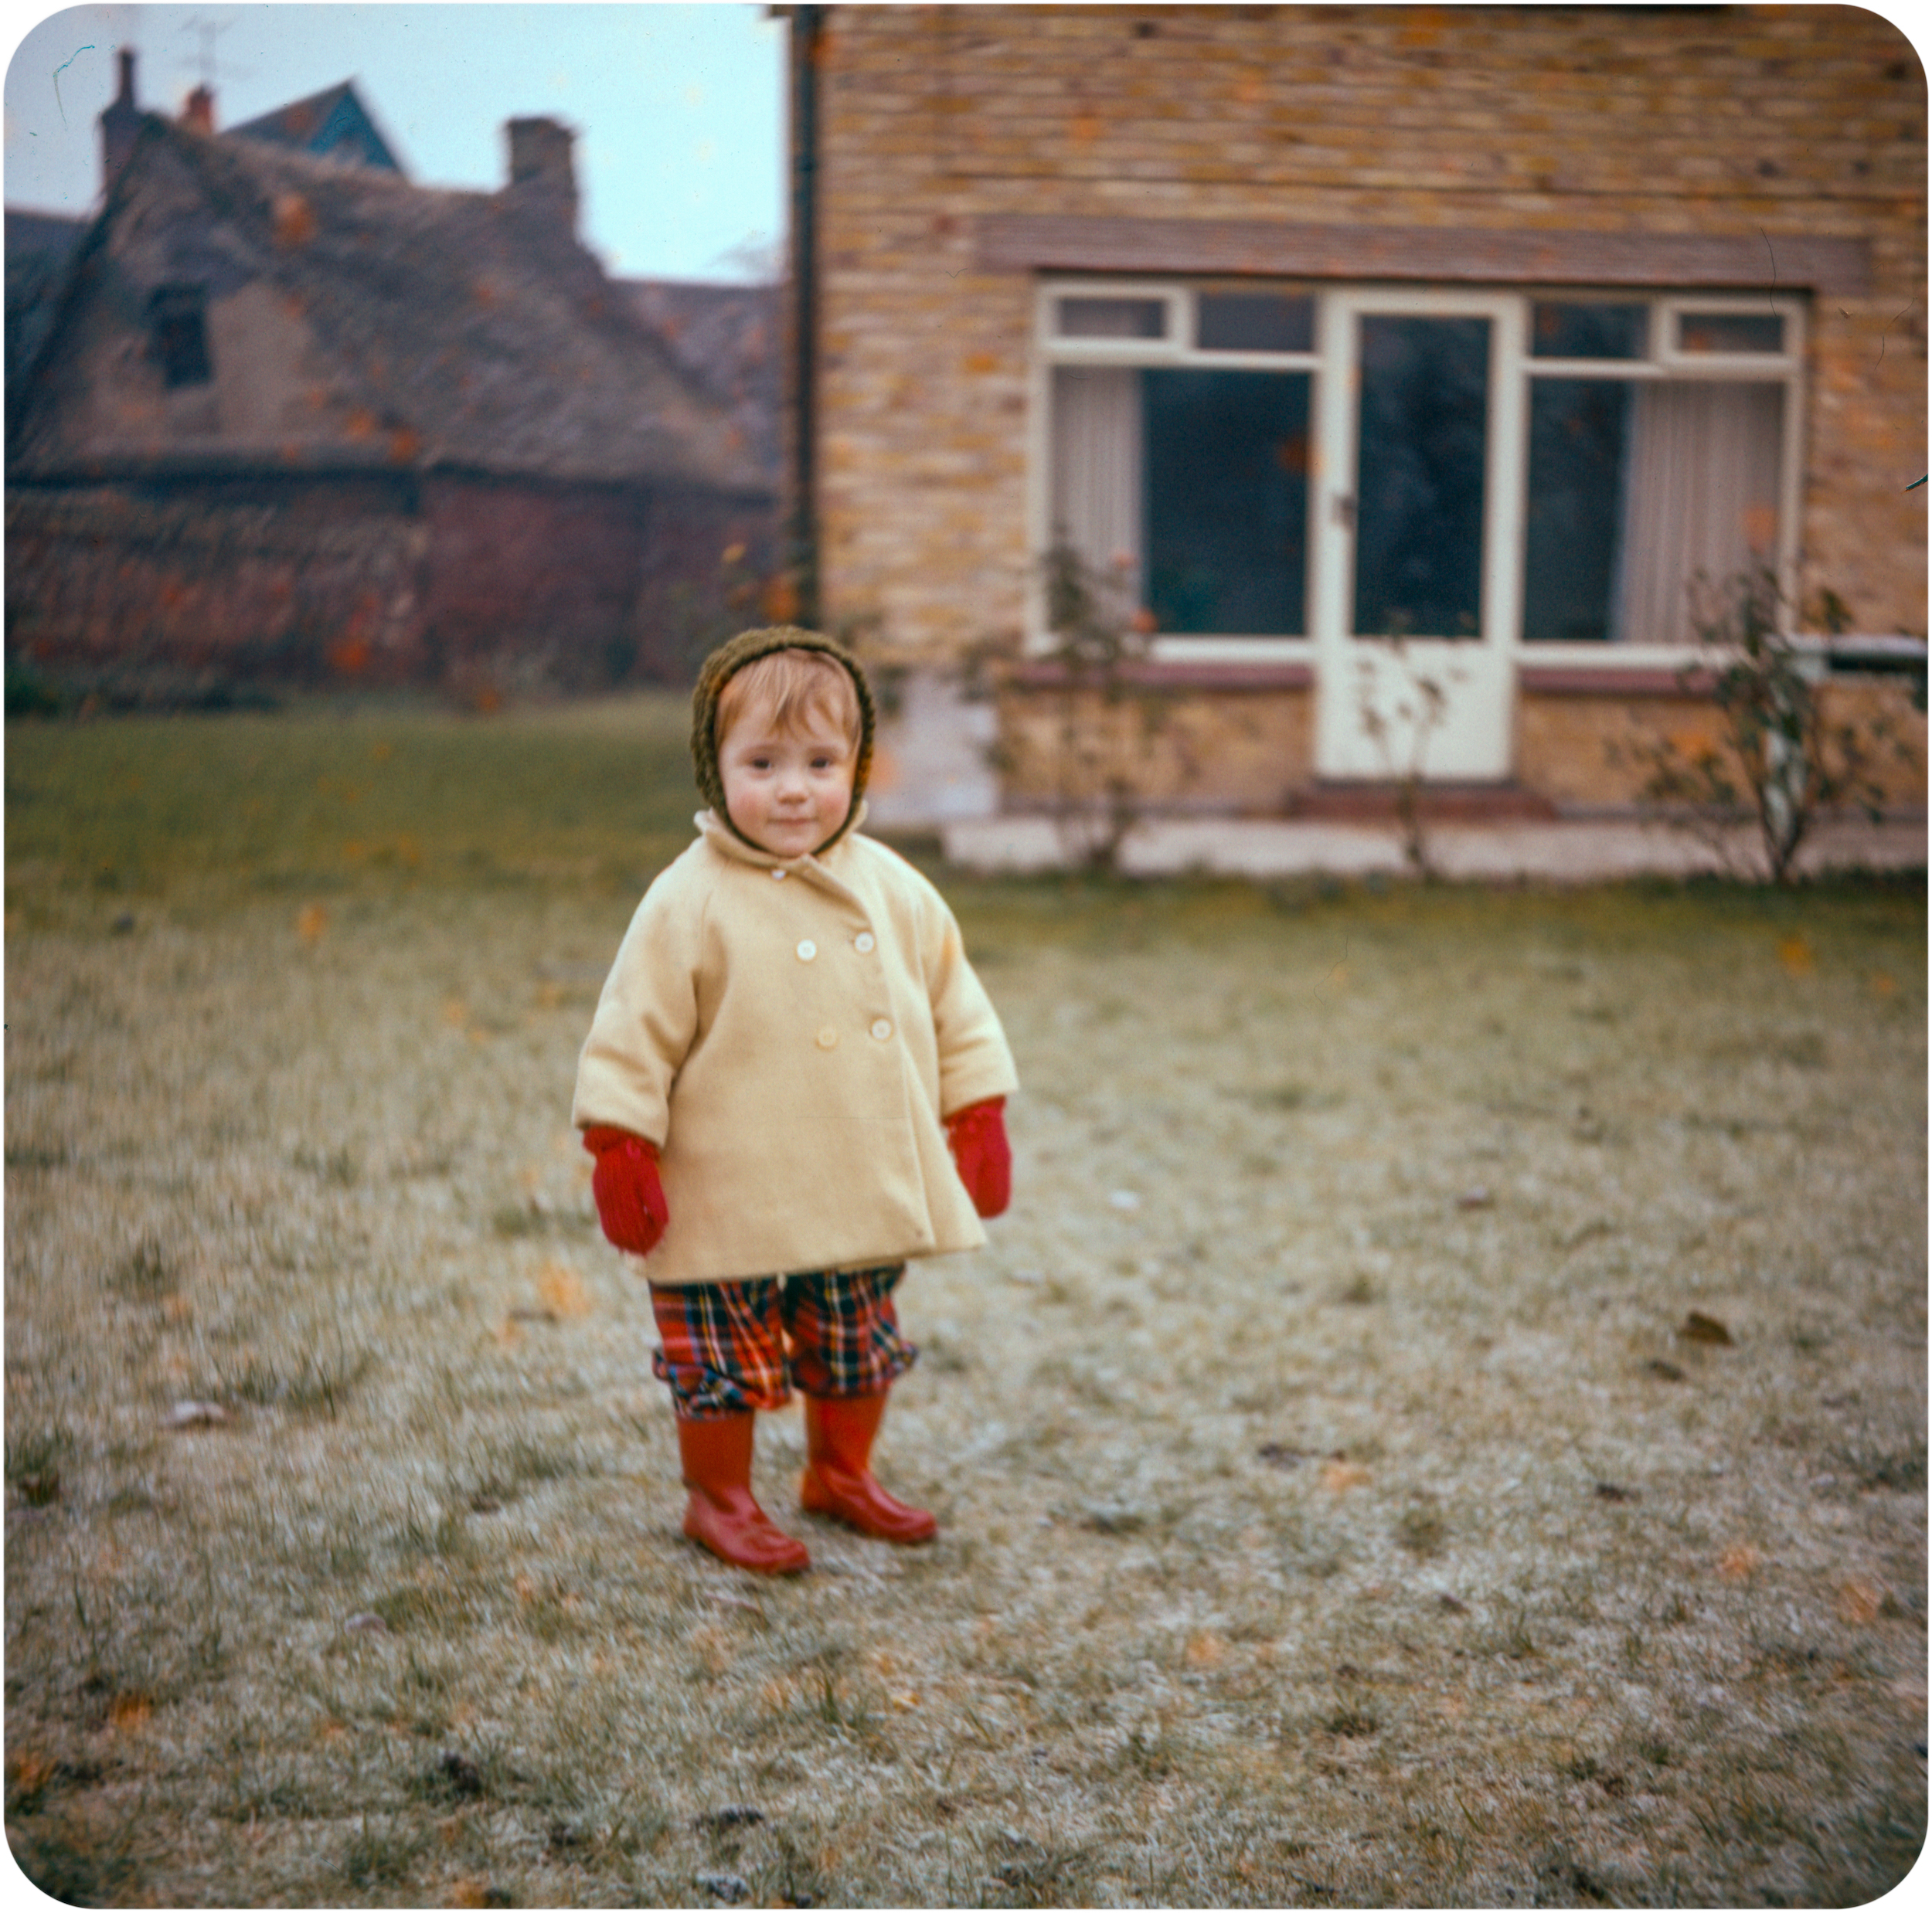 Girl in garden - St. Ives - Circa 1960